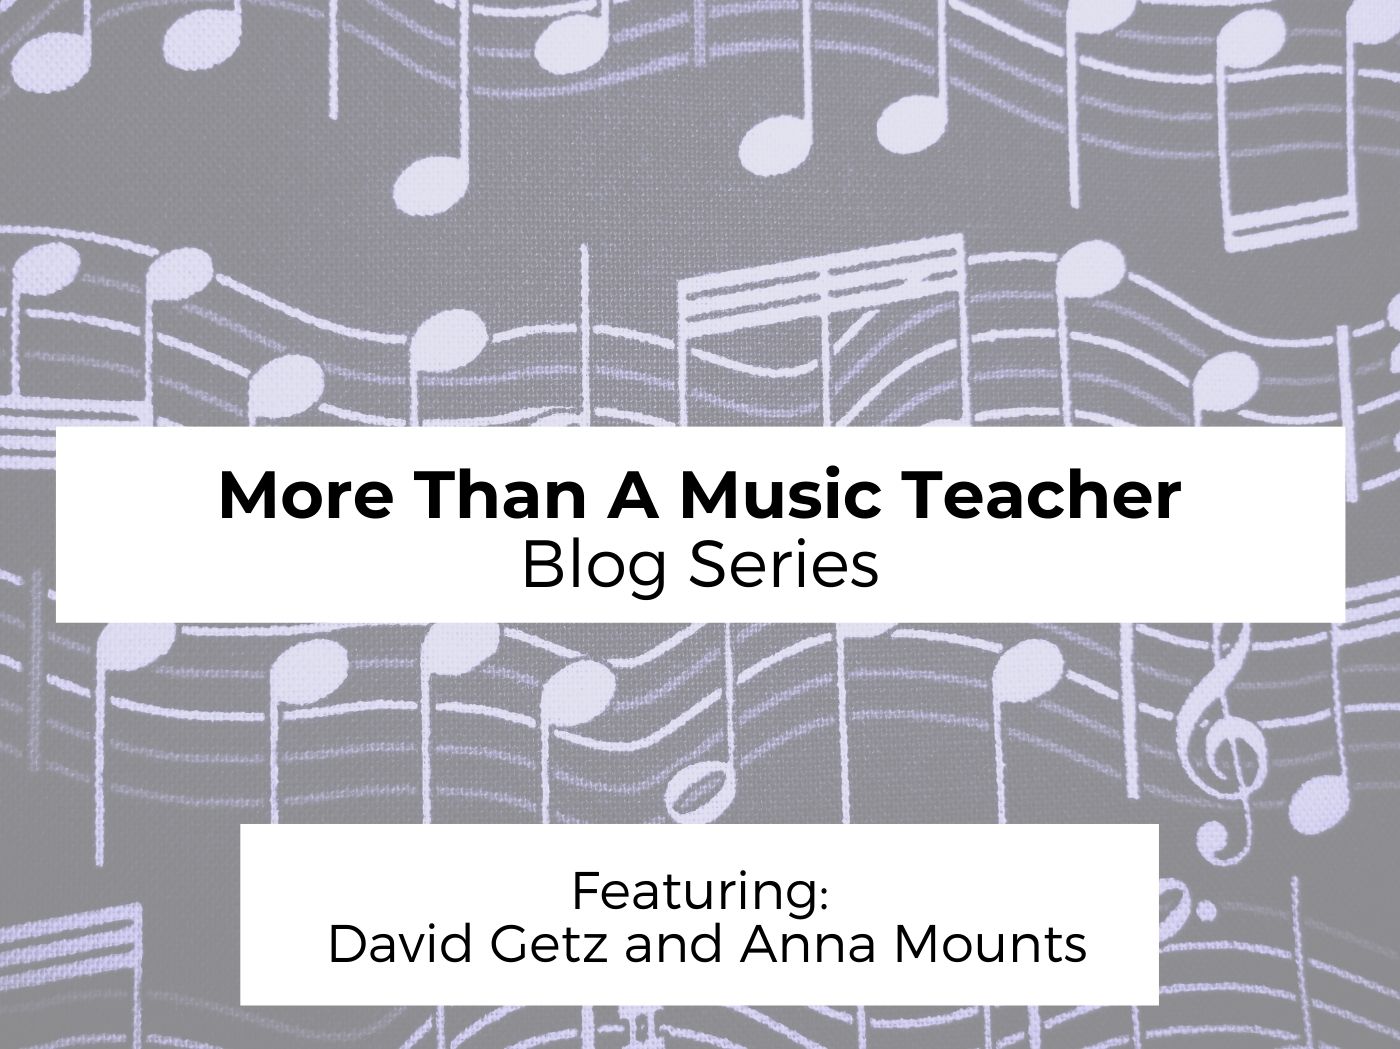 More than a music teacher 2